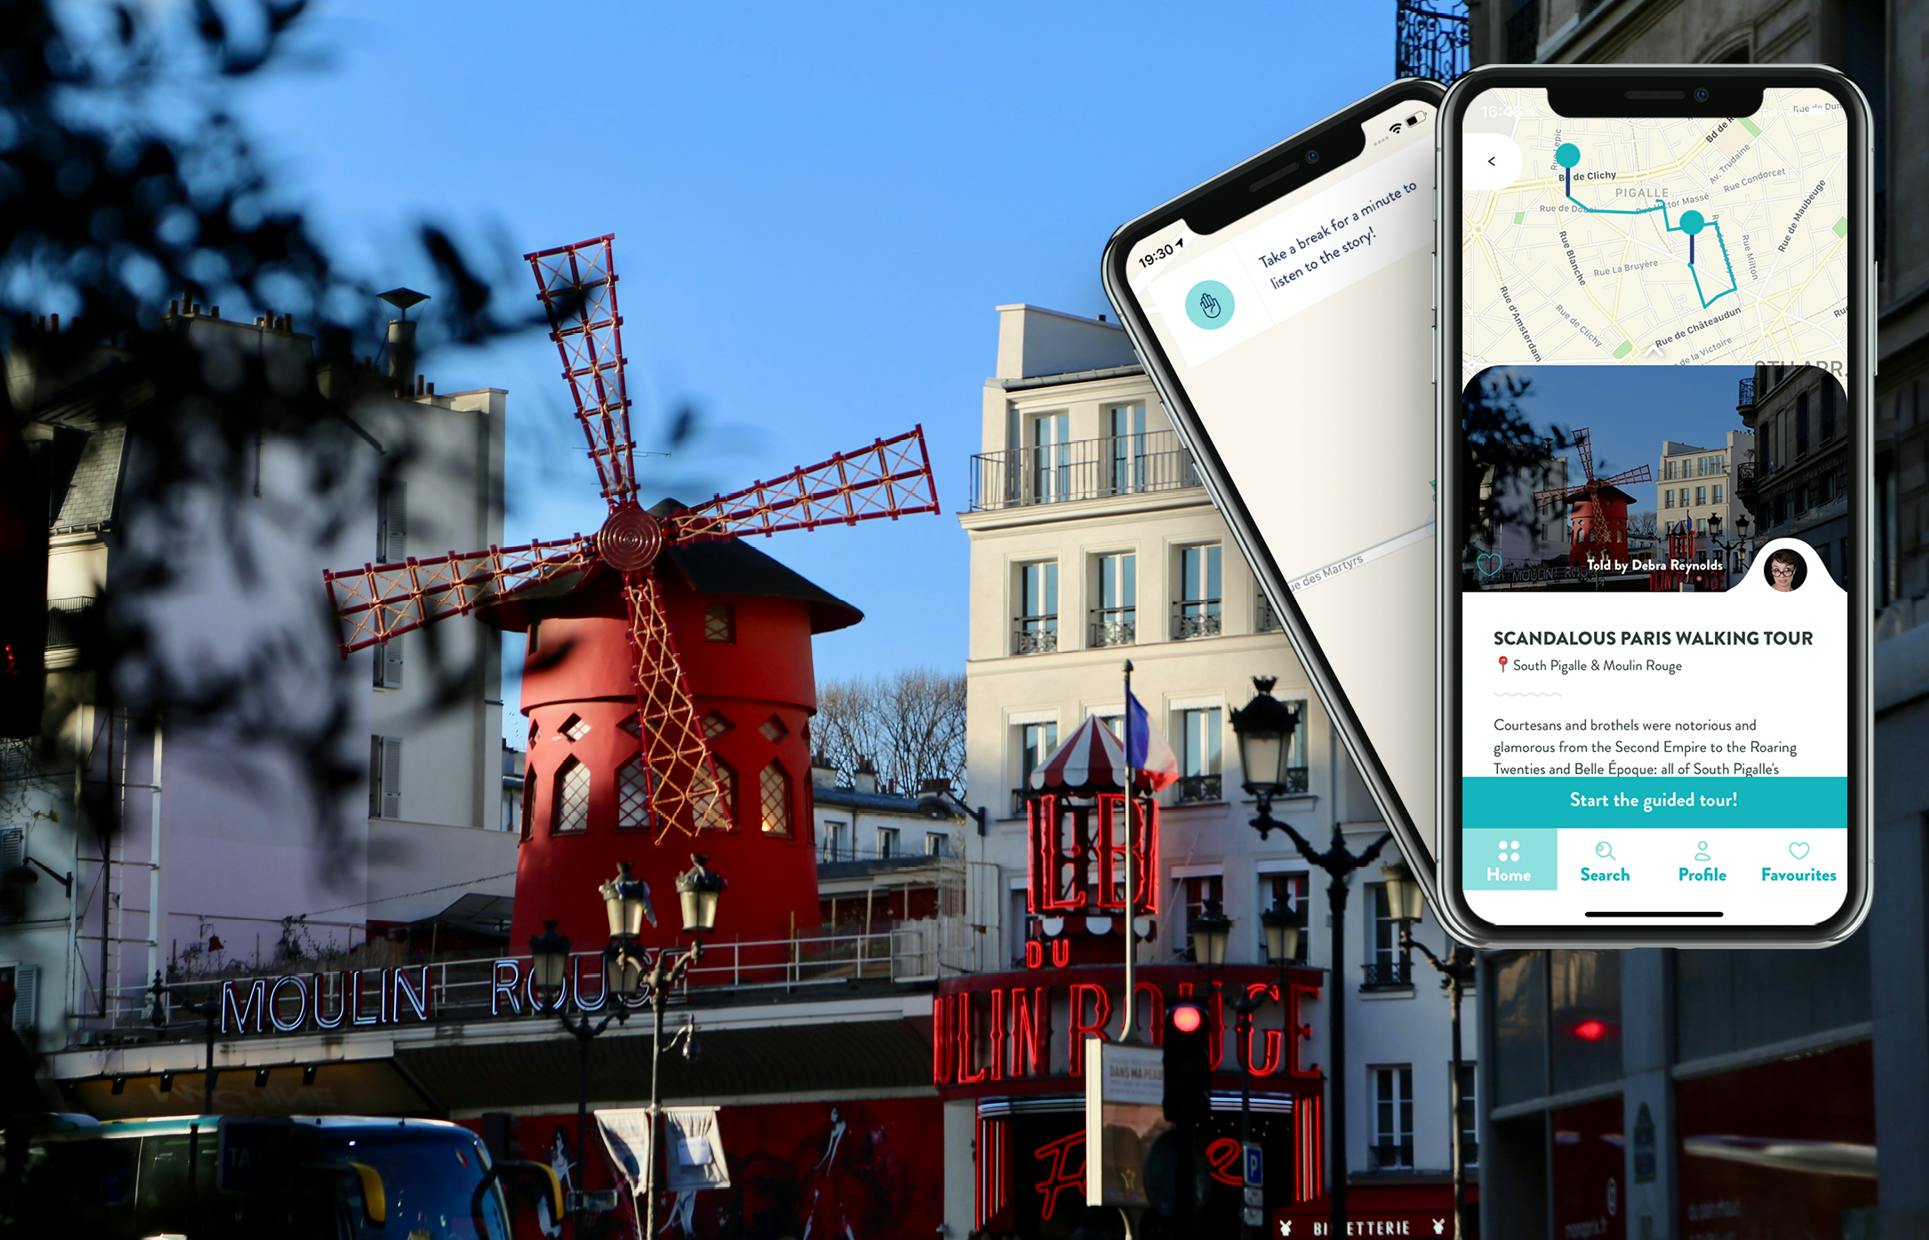 Visite du Paris scandaleux avec un guide sur votre smartphone